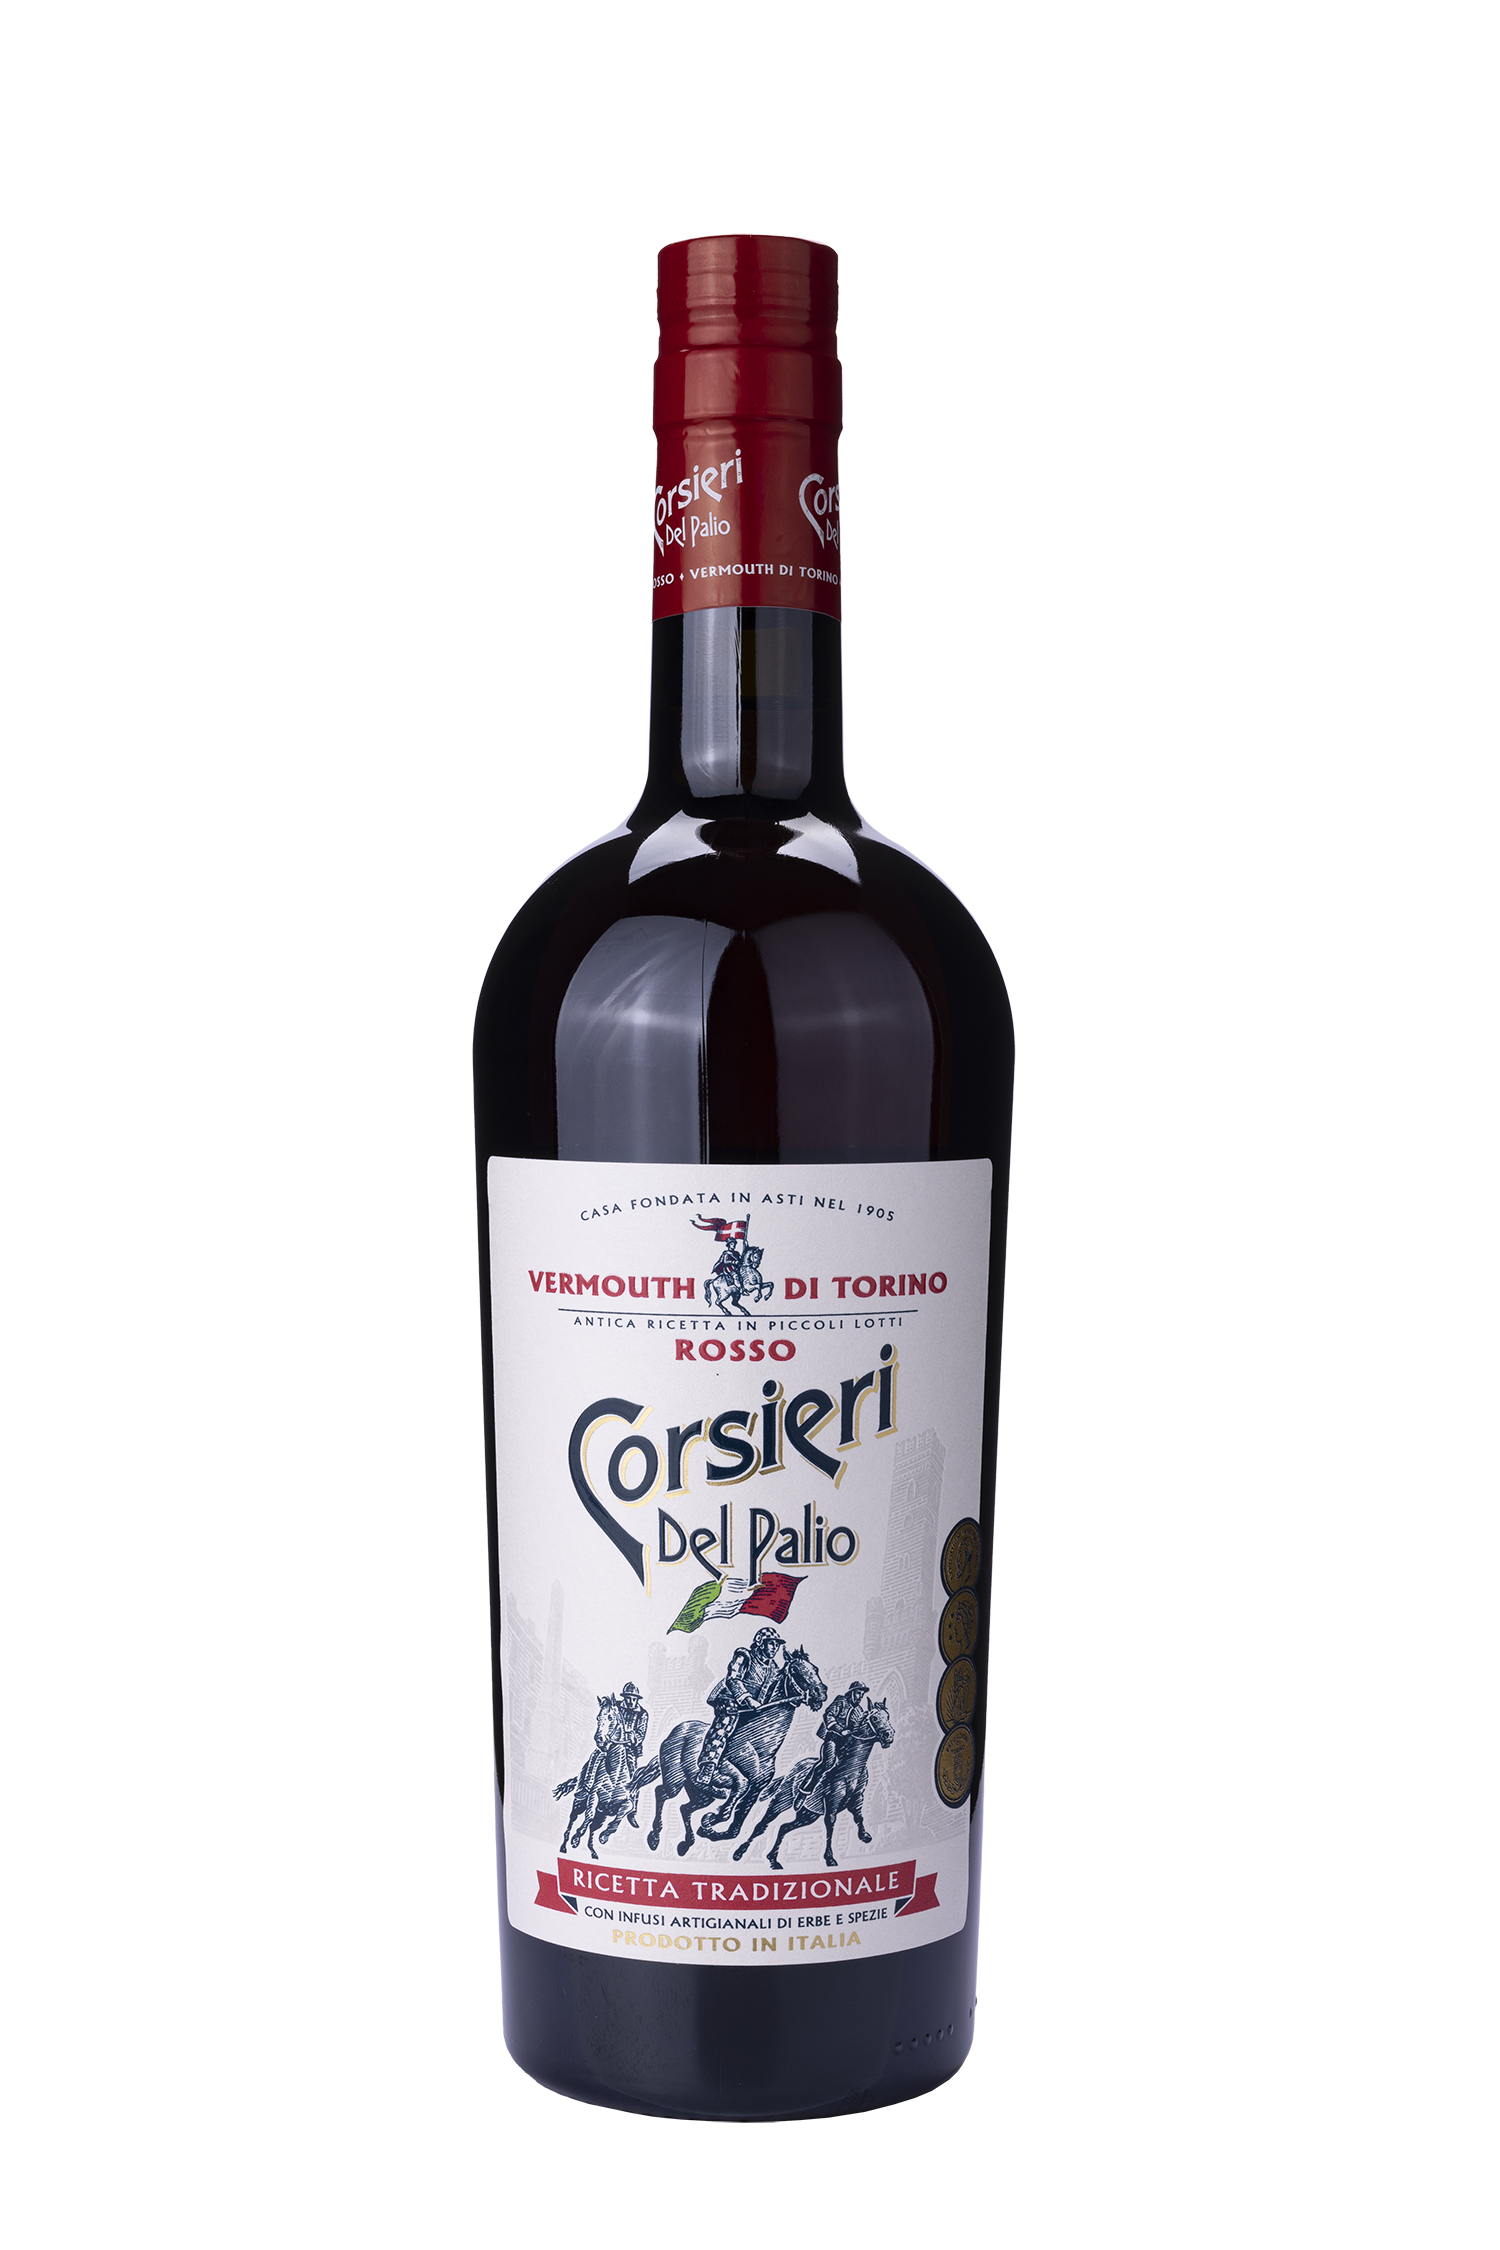 Corsieri del Palio Vermouth rosso